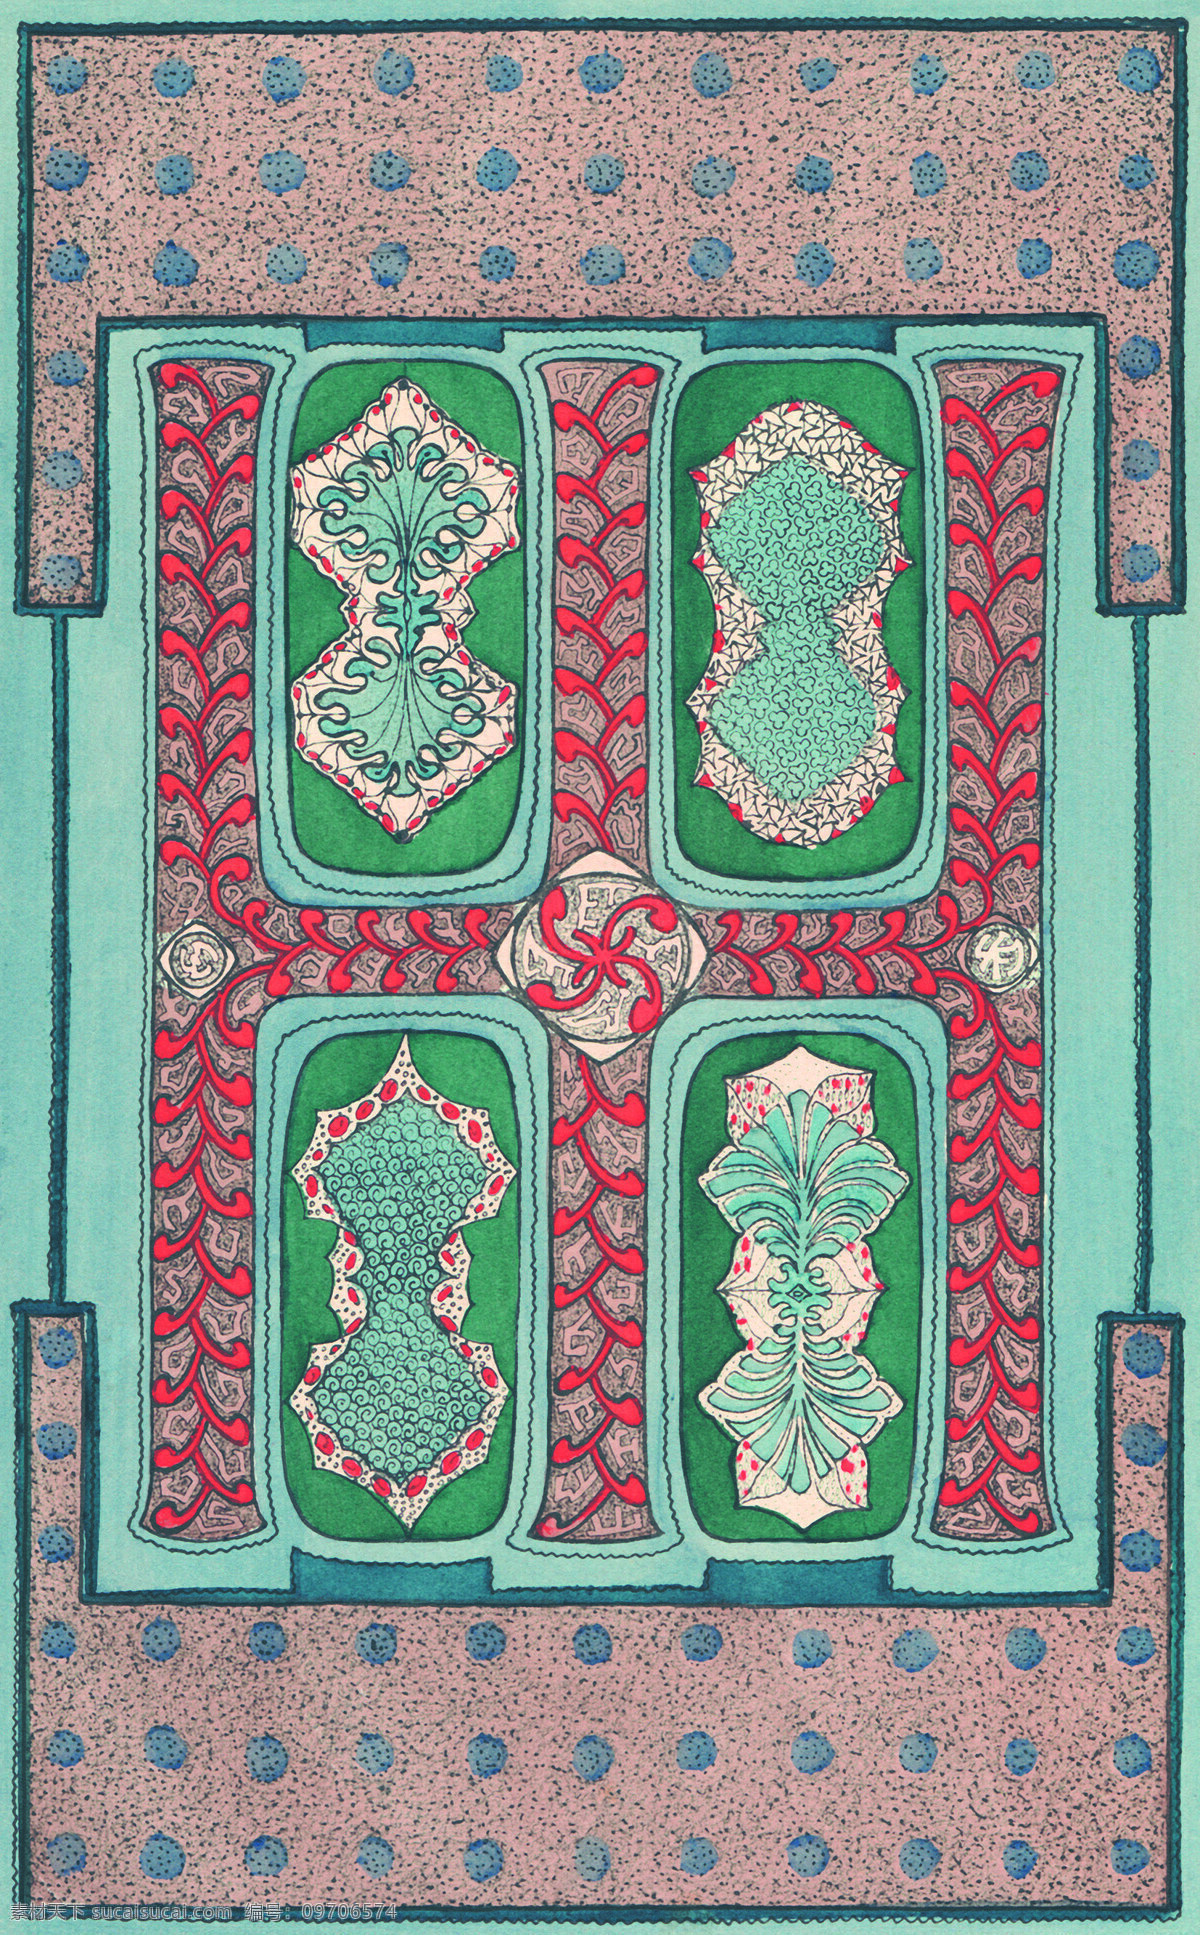 地毯免费下载 布料 布匹 地毯 花纹 矩形 毛毯 欧洲风情 图纹 印度风情 坐垫 文化艺术